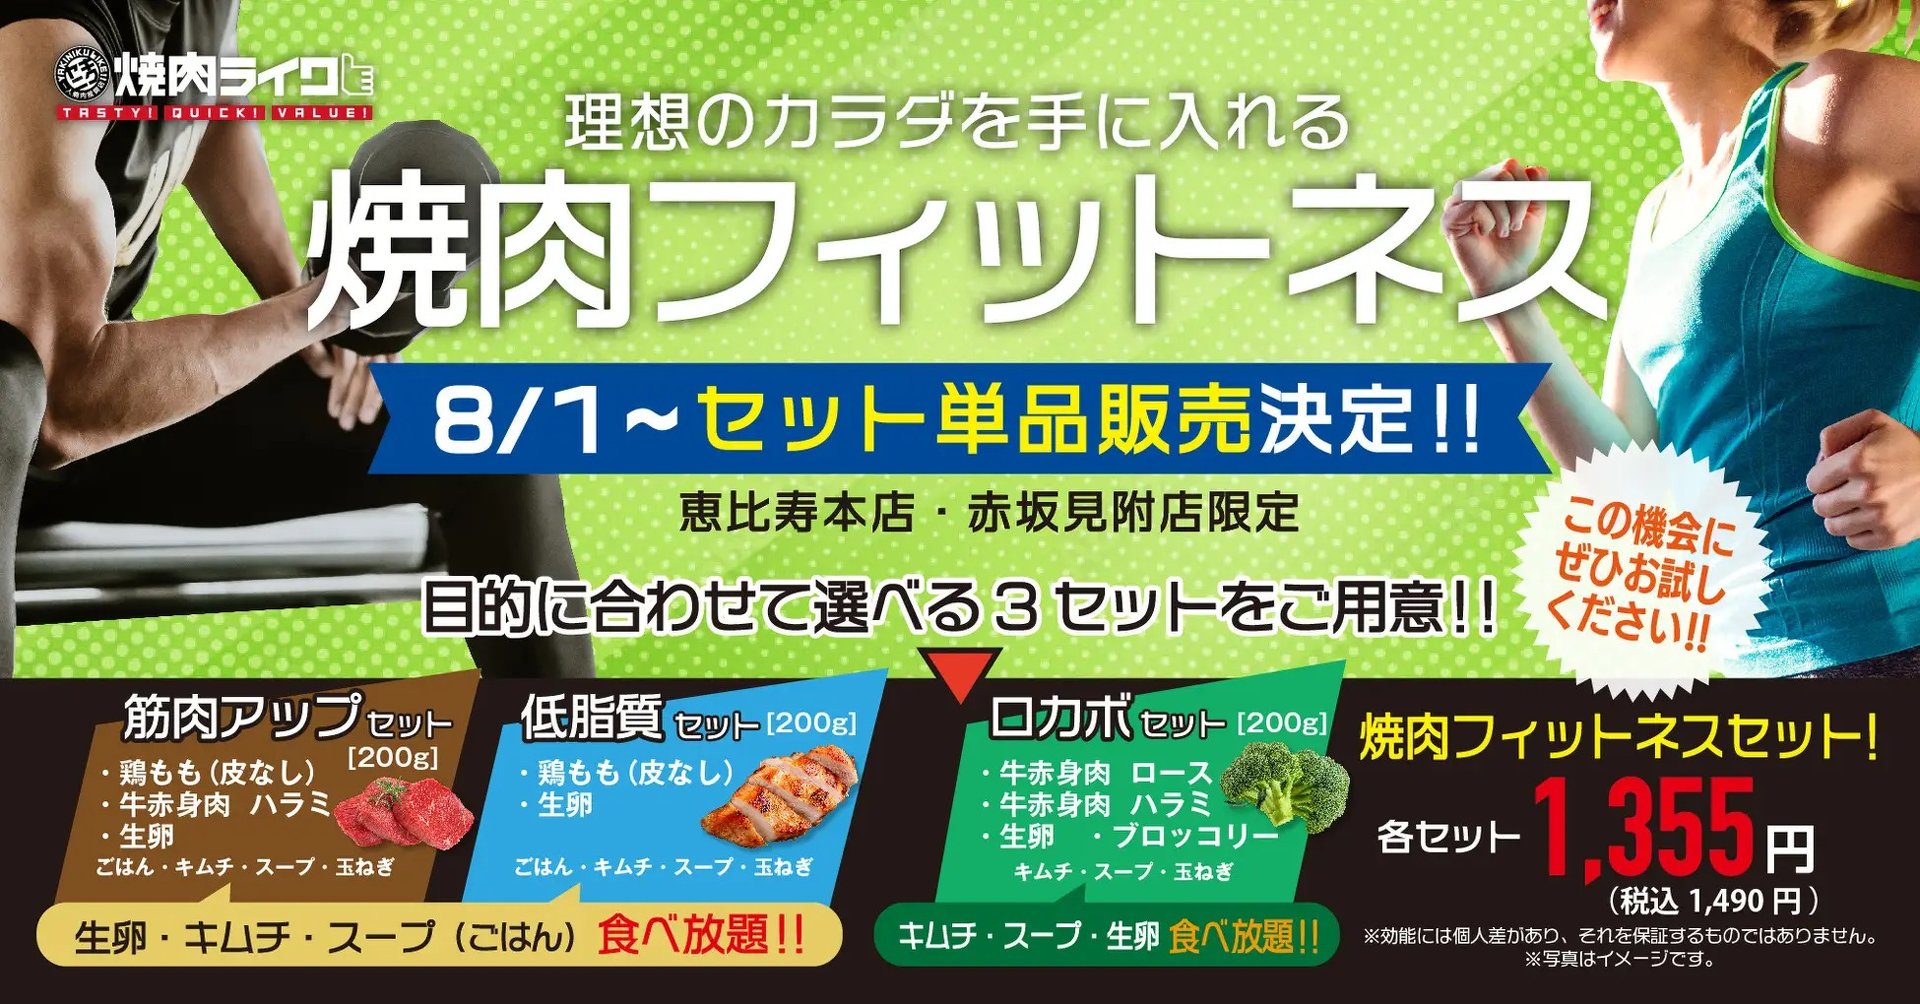 「焼肉ライク」のサブスク限定「焼肉フィットネス」メニュー、単品販売　価格は1490円